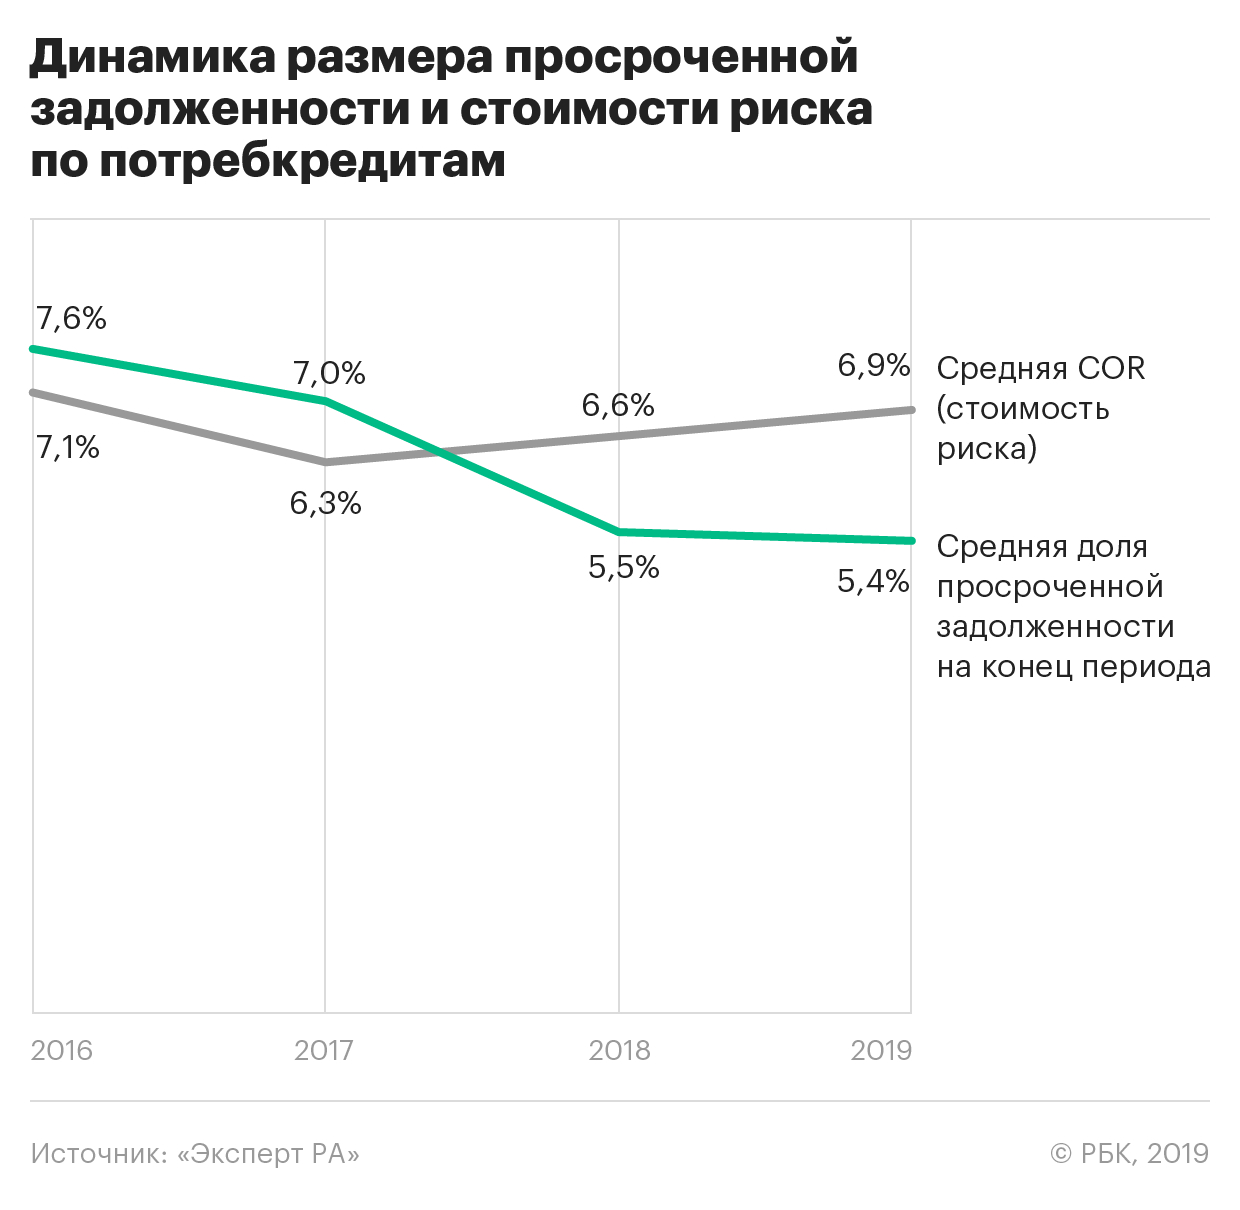 Эксперты сообщили об ухудшении качества кредитов в российских банках